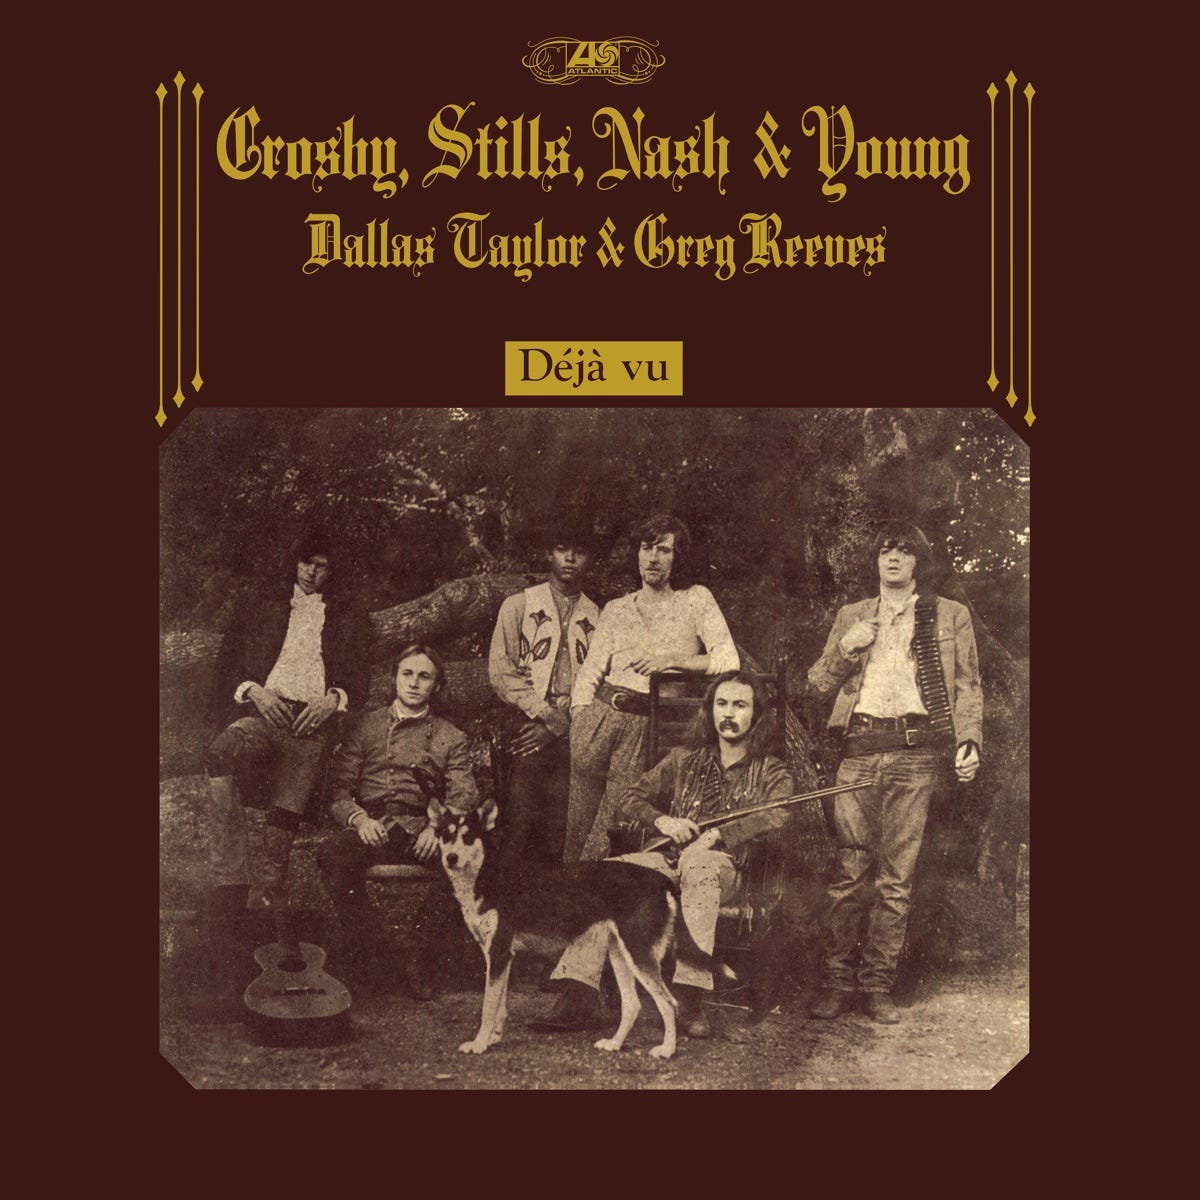 Déjà Vu - Album by Crosby, Stills, Nash & Young - Apple Music